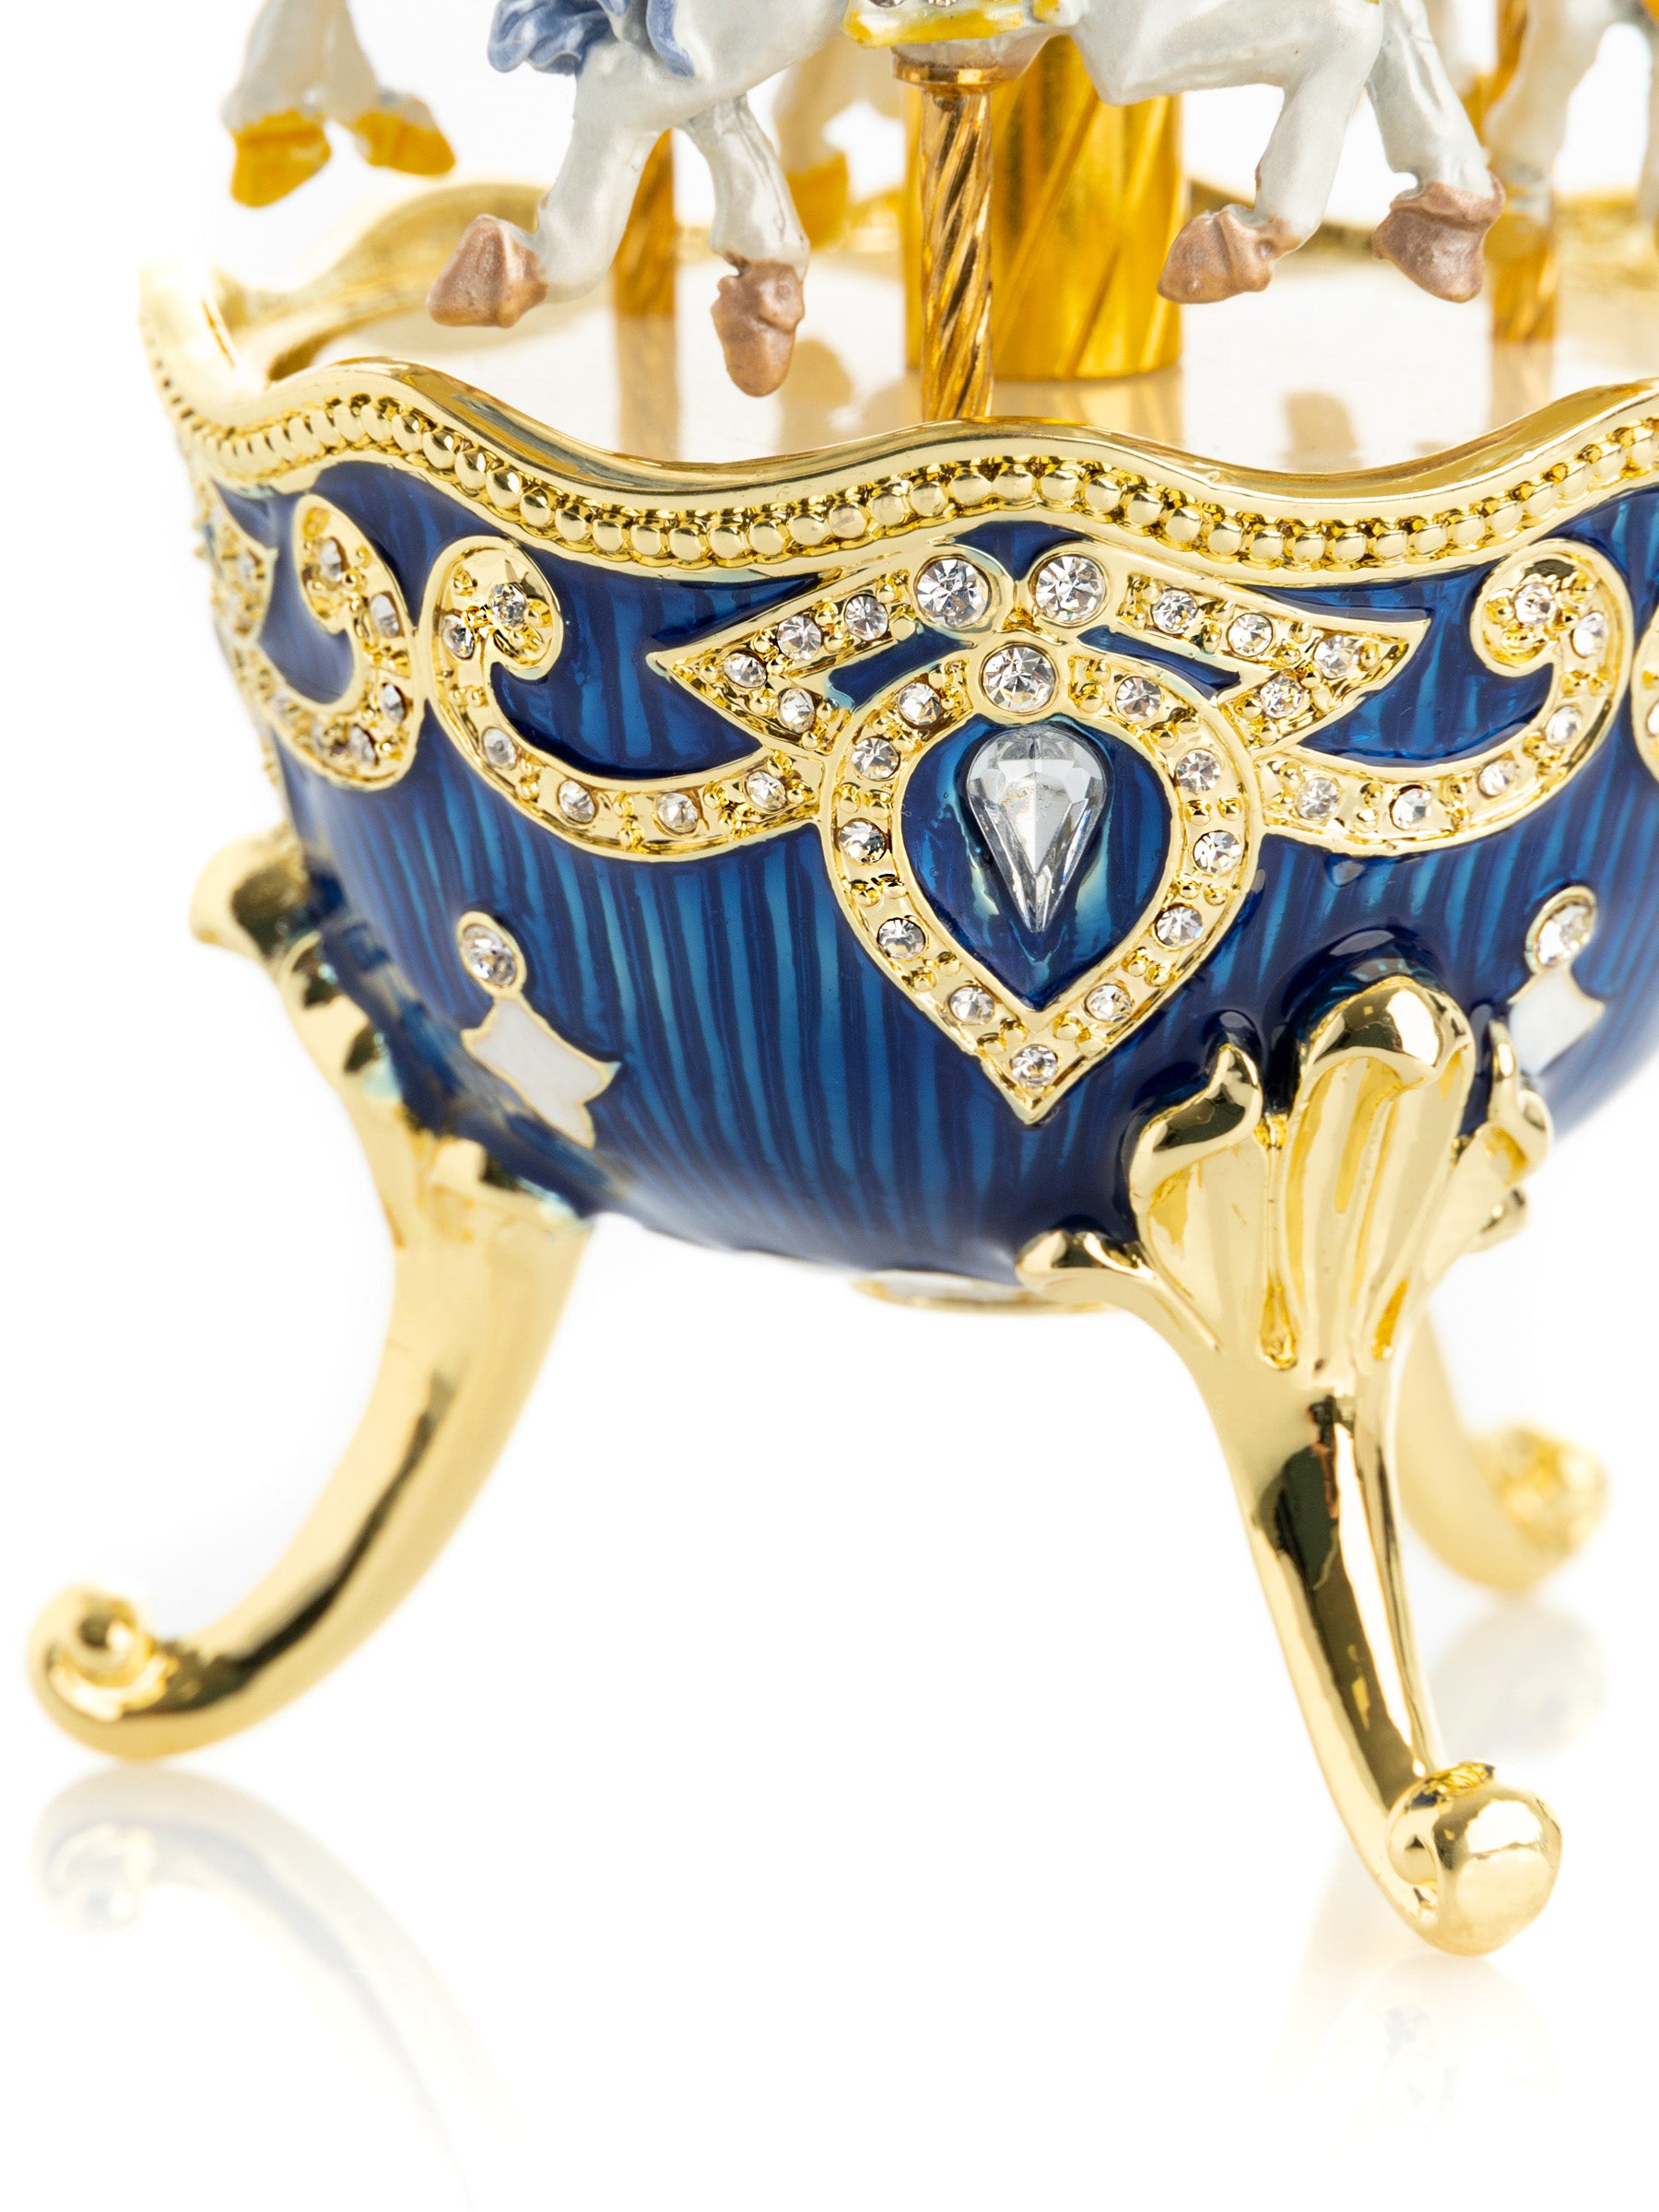 Oeuf Fabergé de carrousel à cheval à remonter bleu